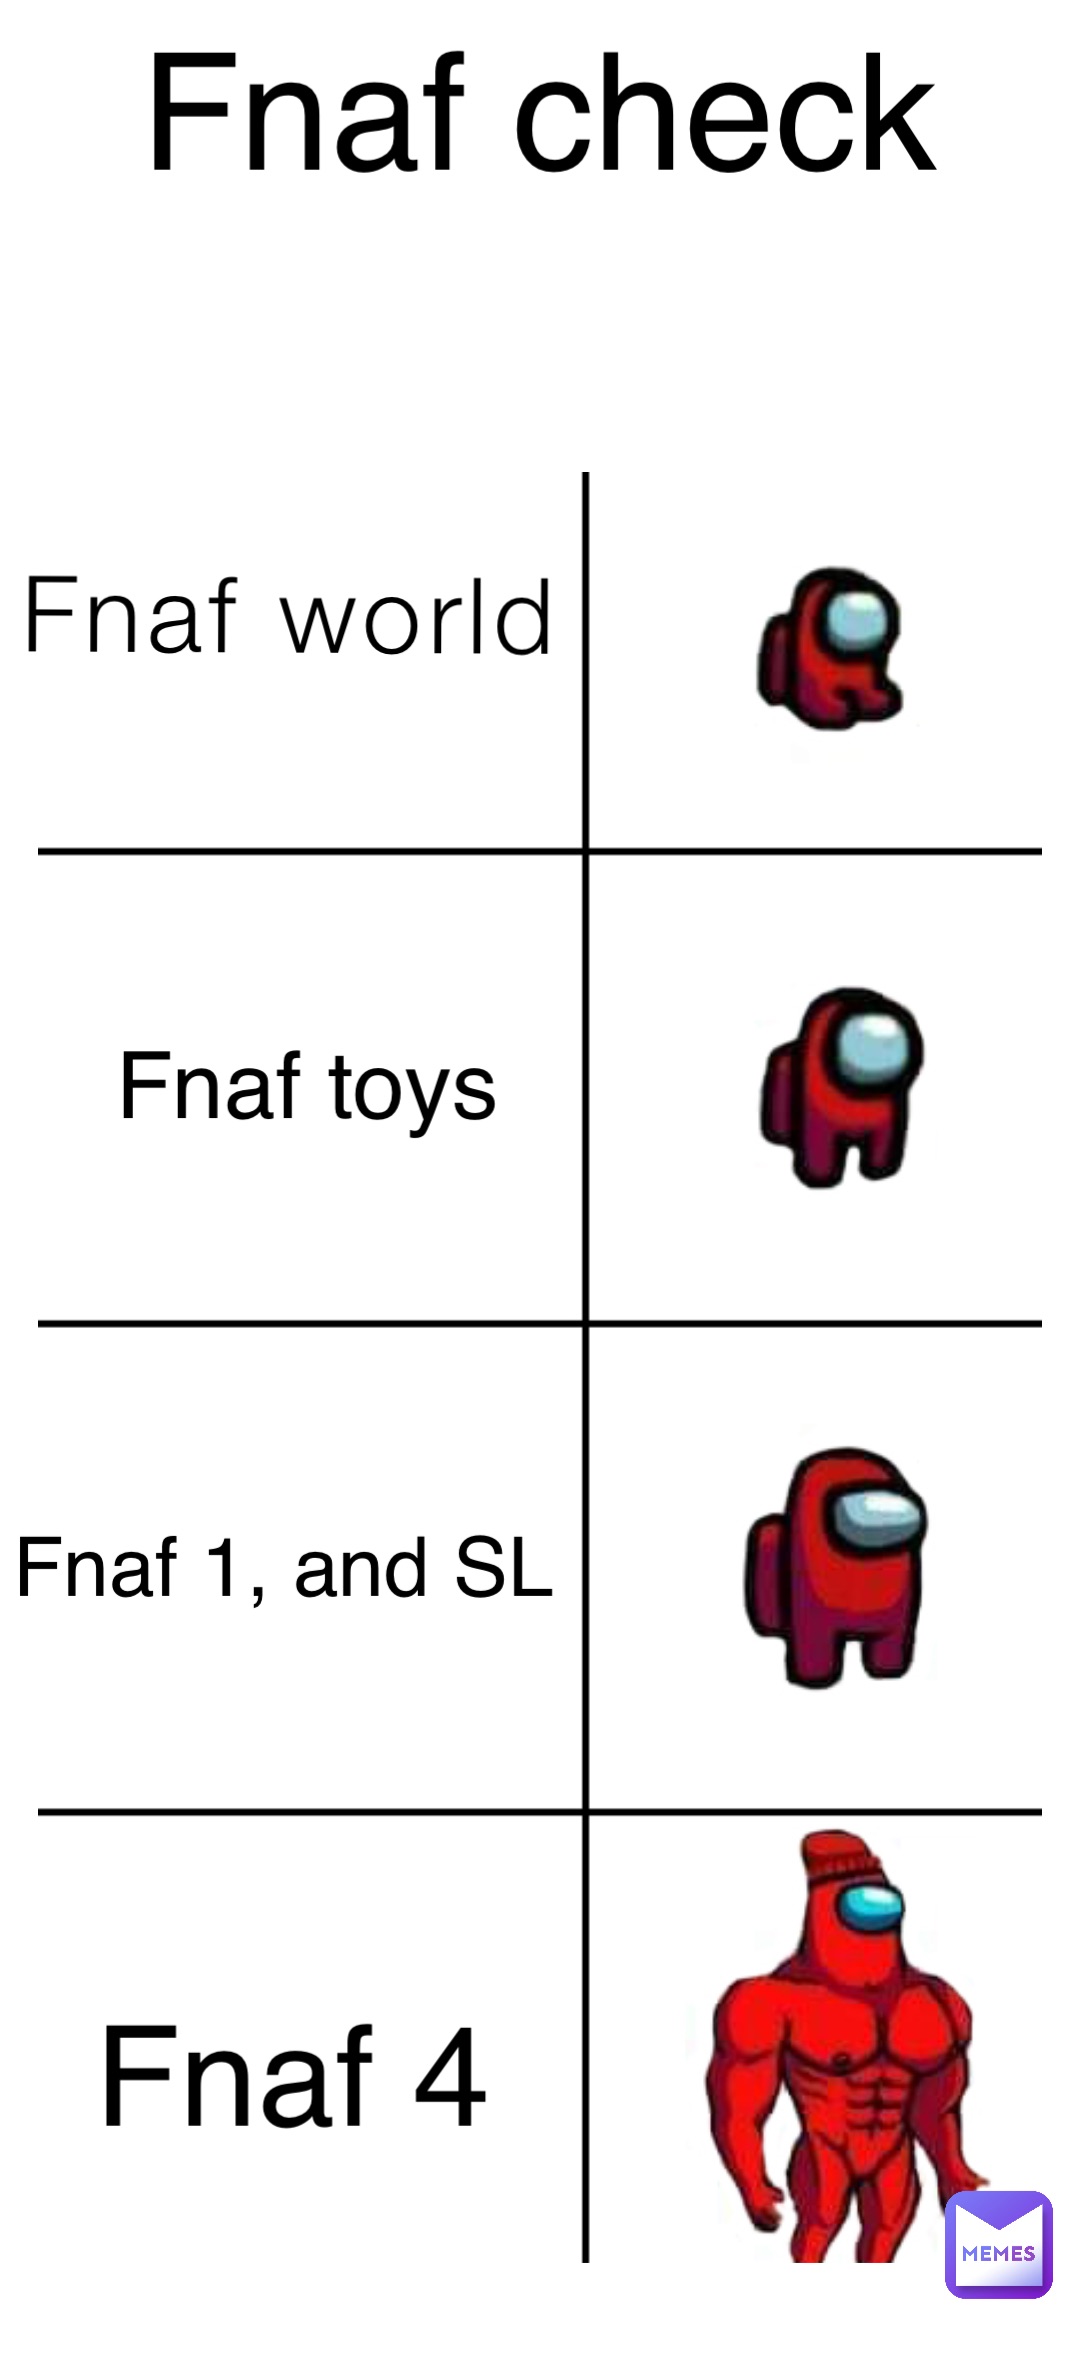 Fnaf world Fnaf toys Fnaf 1, and SL Fnaf 4 Fnaf check